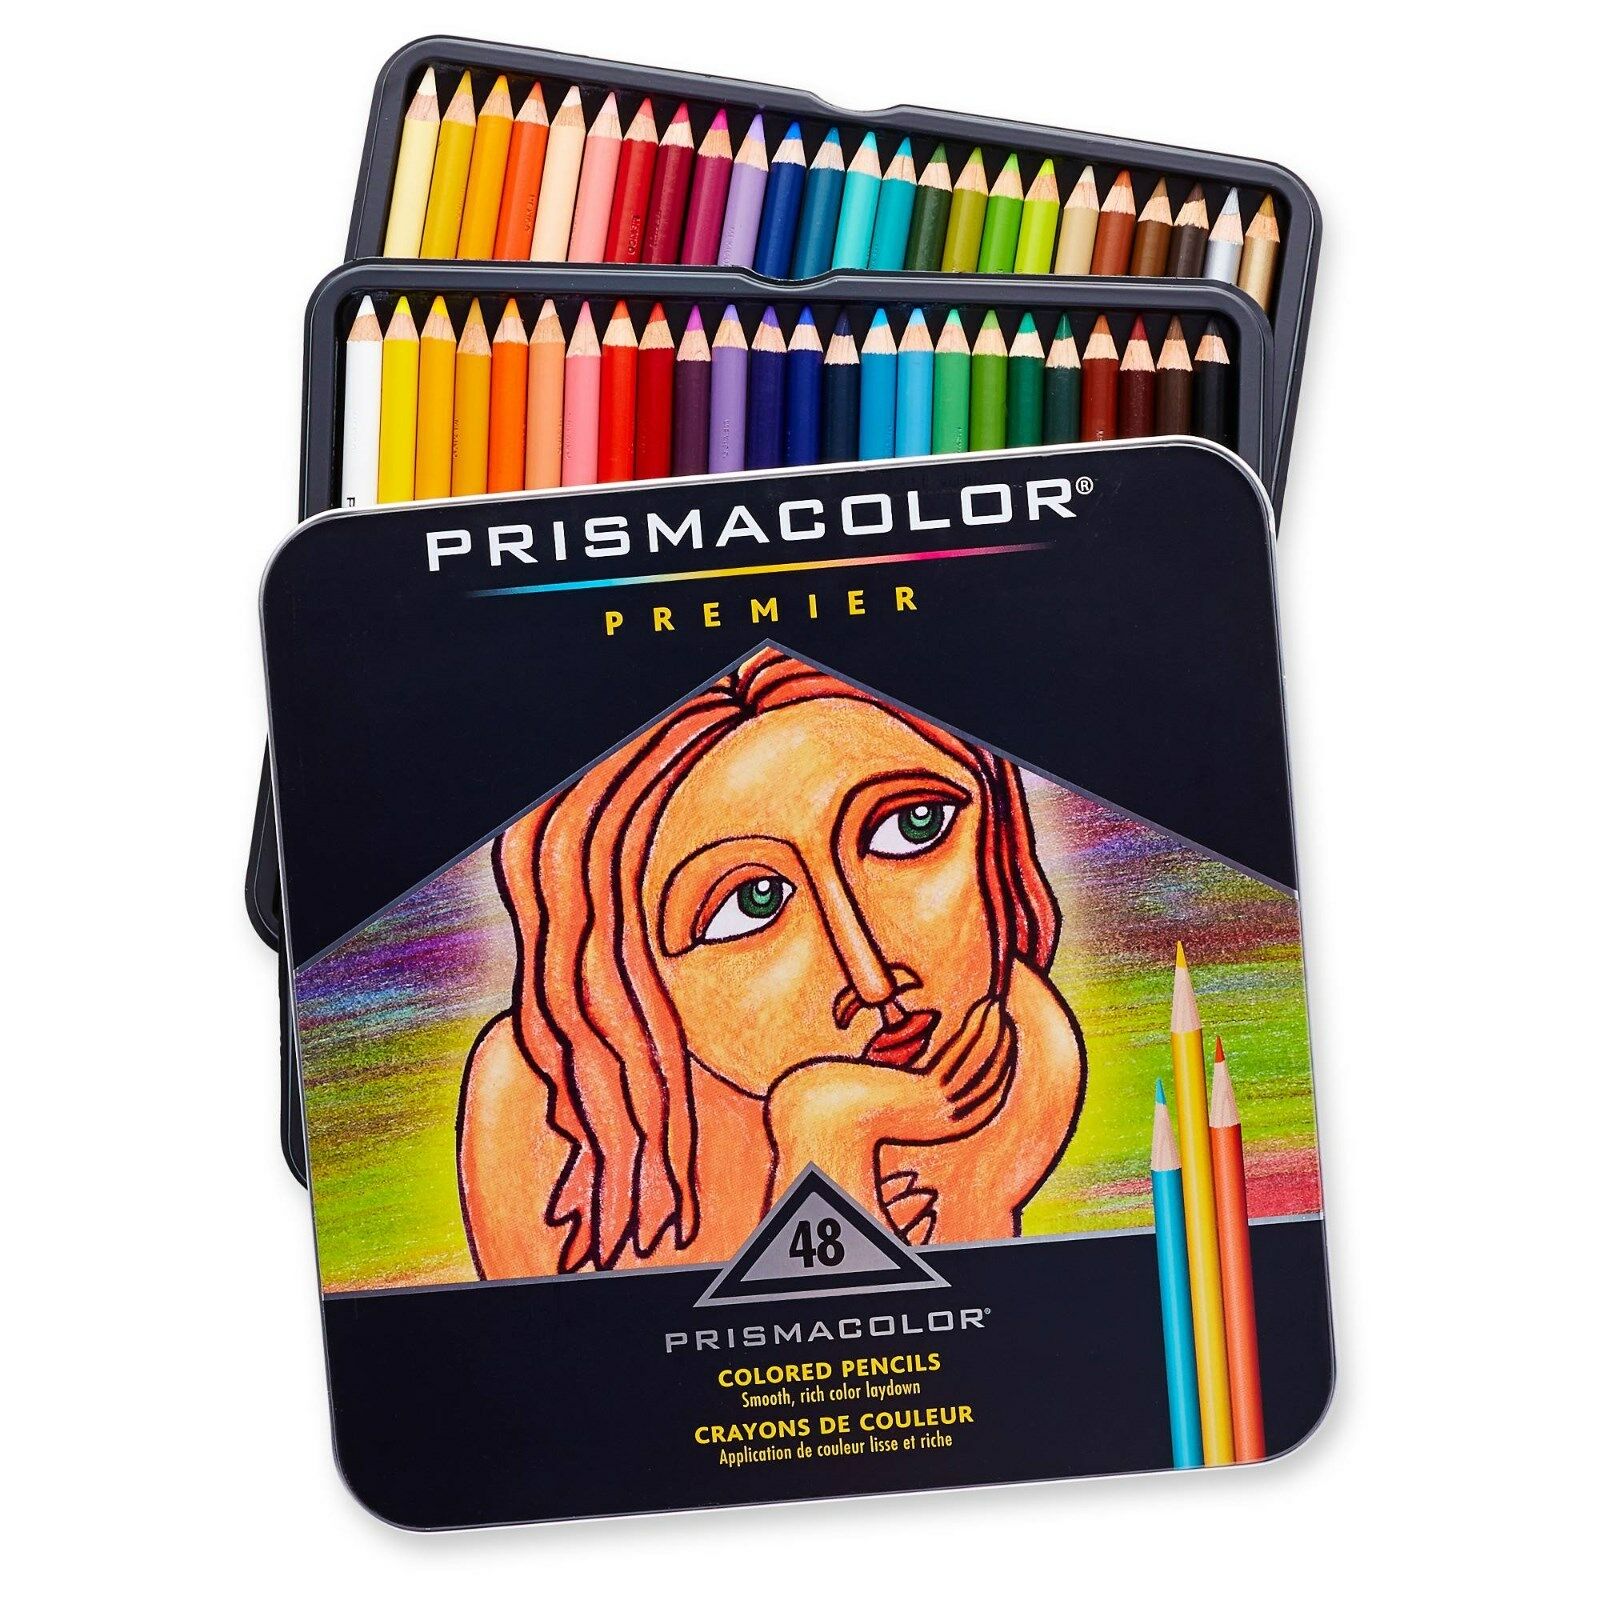 Prismacolor Premier Colored Pencils, 48 Assorted Color Pencils, New